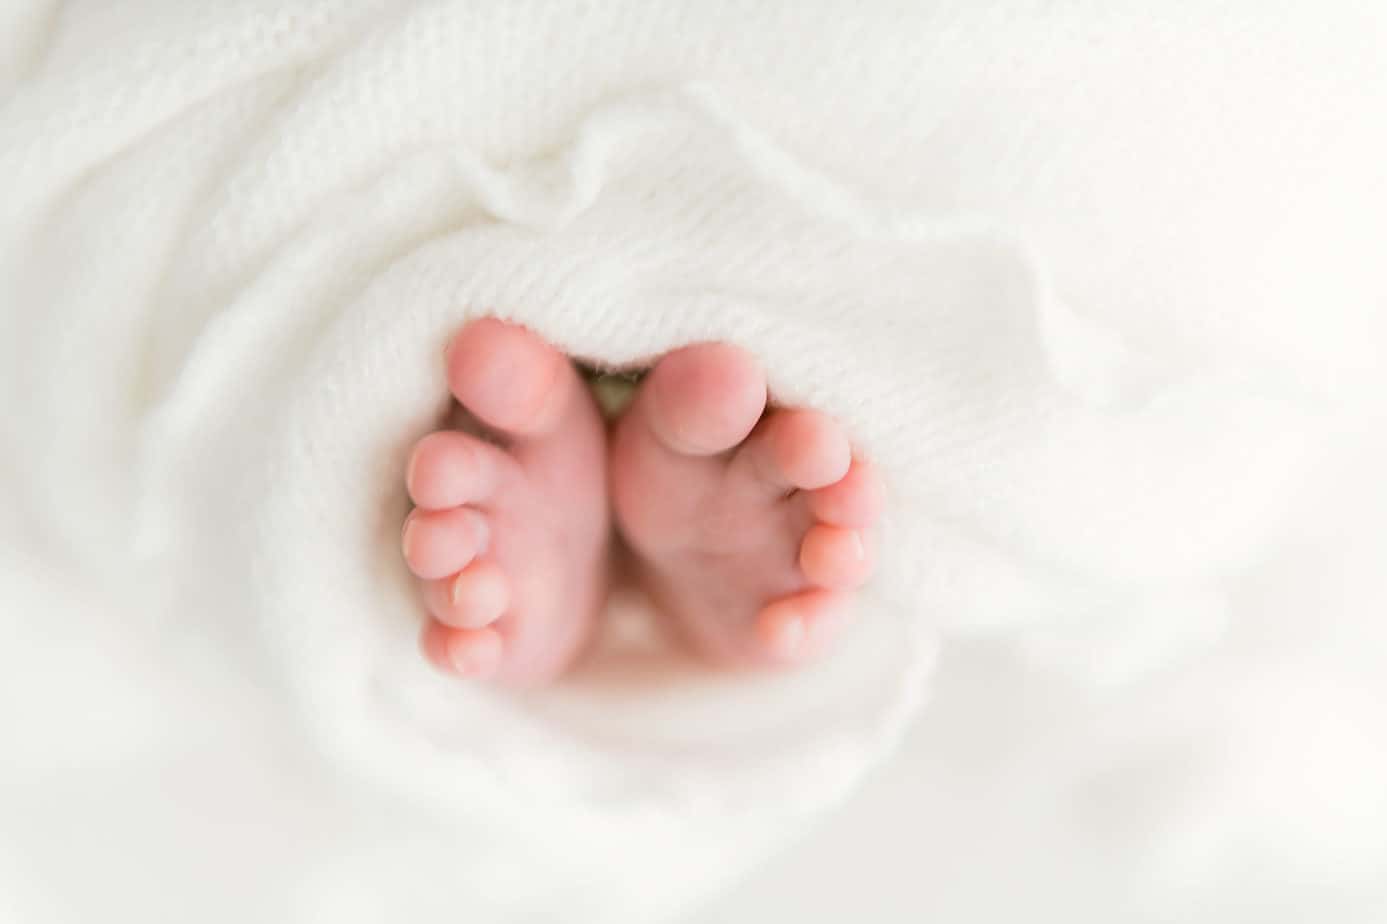 newborn feet detail shot